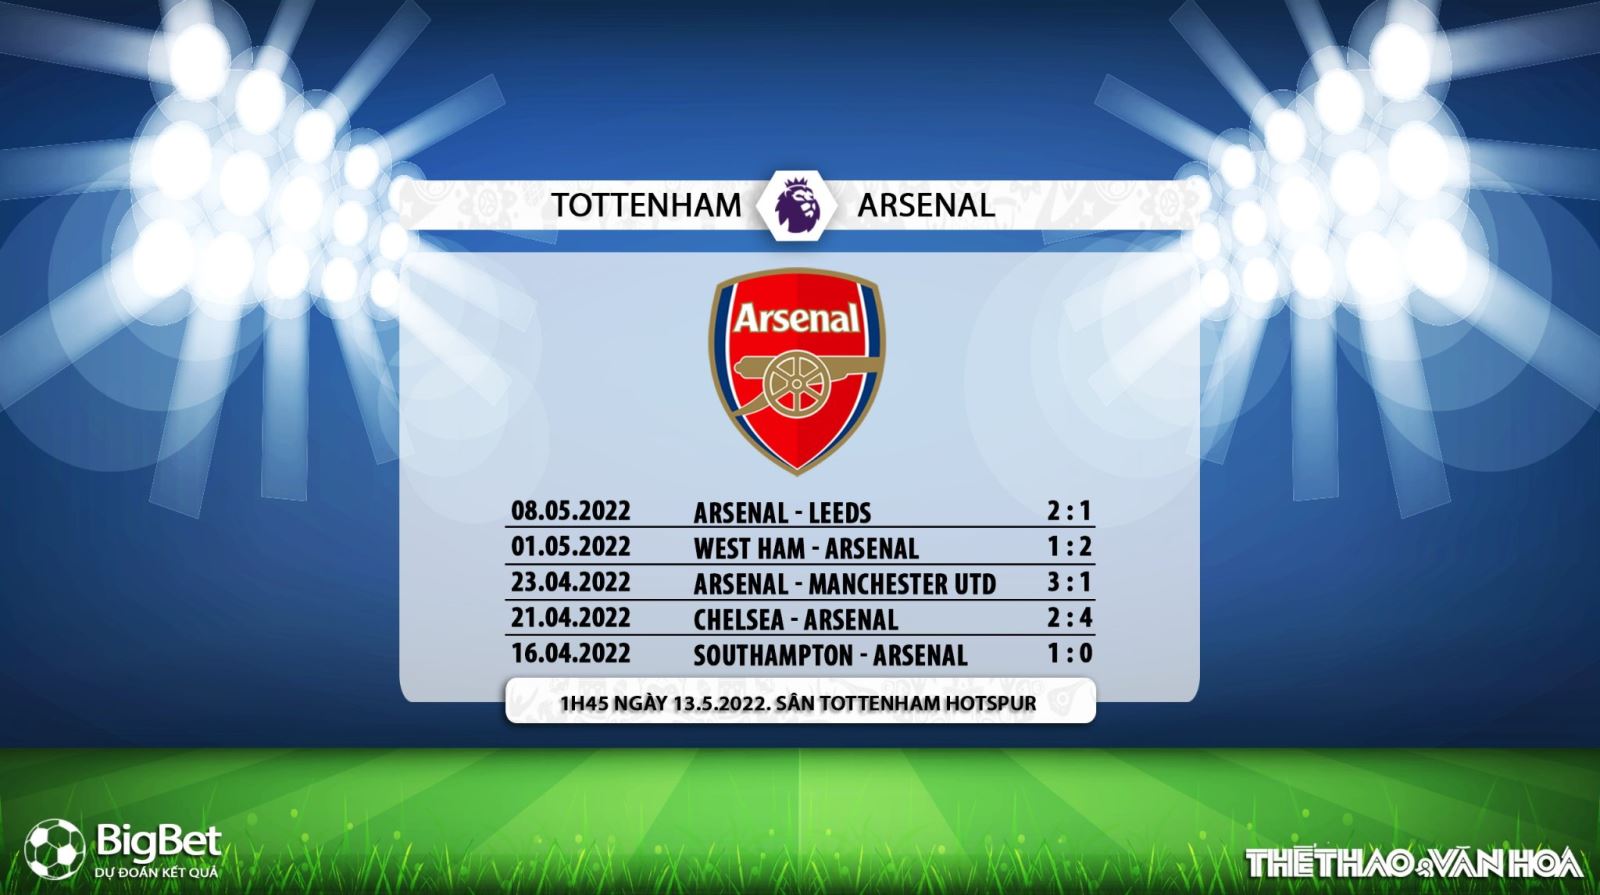 soi kèo Tottenham vs Arsenal, kèo nhà cái, Tottenham vs Arsenal, nhận định bóng đá, Tottenham, Arsenal, keo nha cai, dự đoán bóng đá, Ngoại hạng Anh, bóng đá Anh